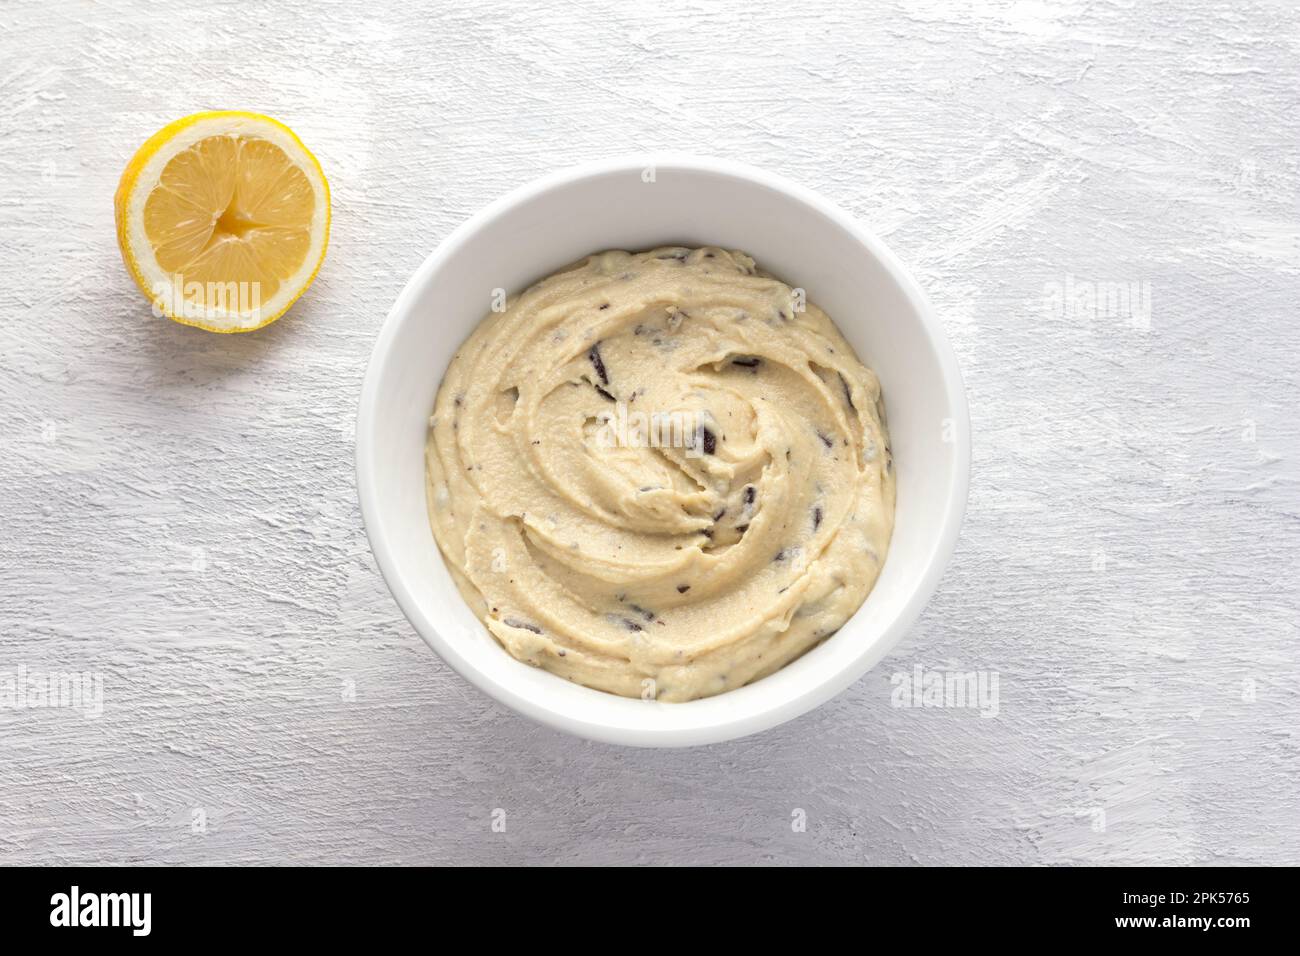 Moulu dans un mélangeur, les noix de cajou trempées avec des morceaux de chocolat, texture crémeuse, avec un demi-citron dans un bol blanc sur fond gris clair. Cuisson v Banque D'Images